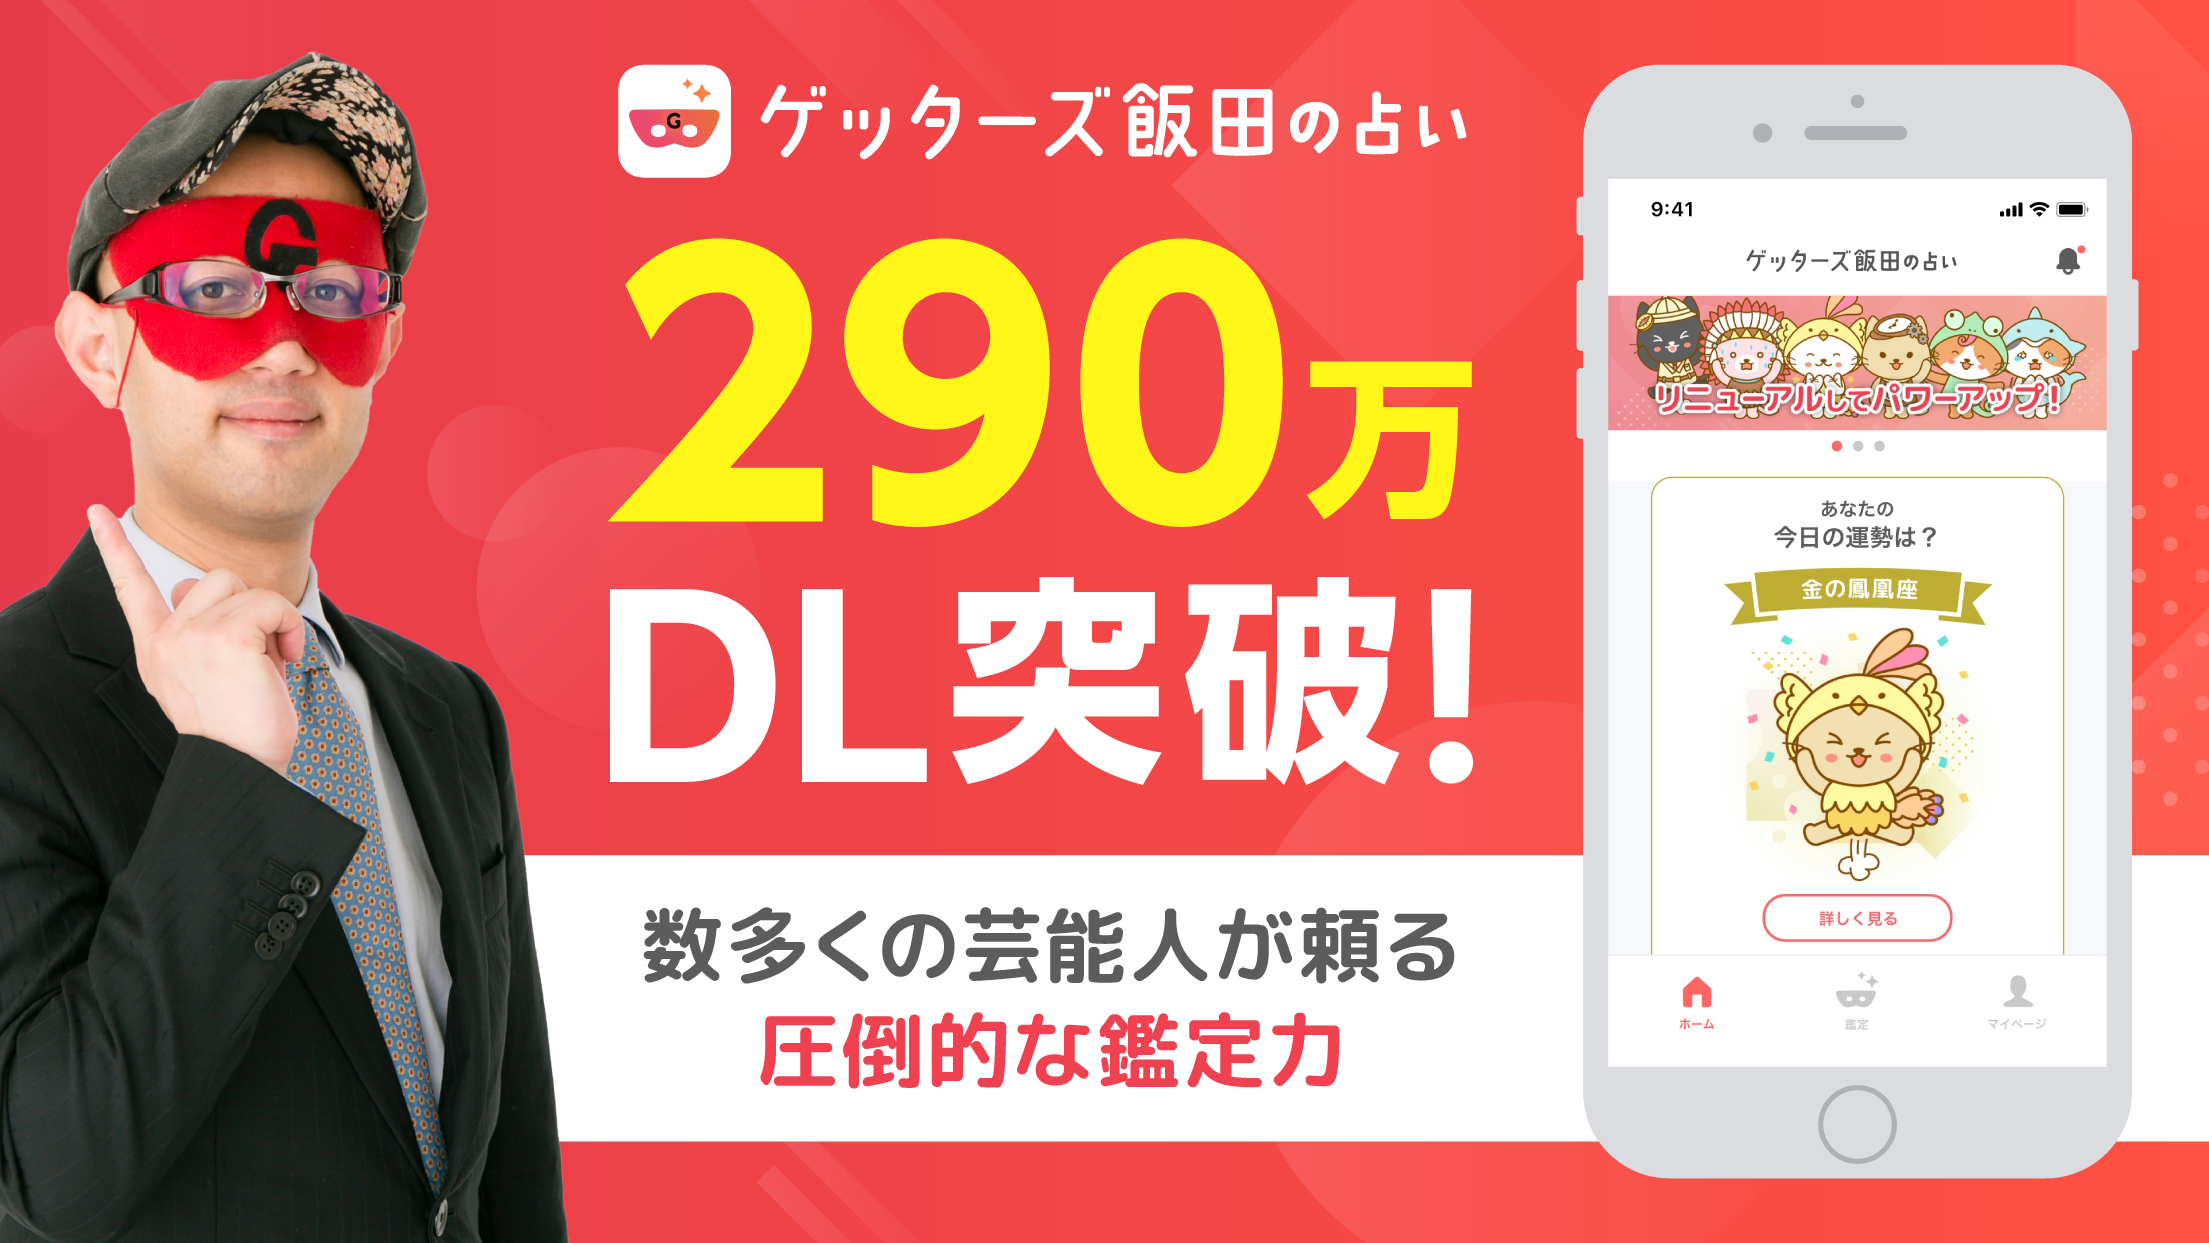 ゲッターズ飯田の占い アプリにガイドキャラクターが誕生 株式会社camのプレスリリース